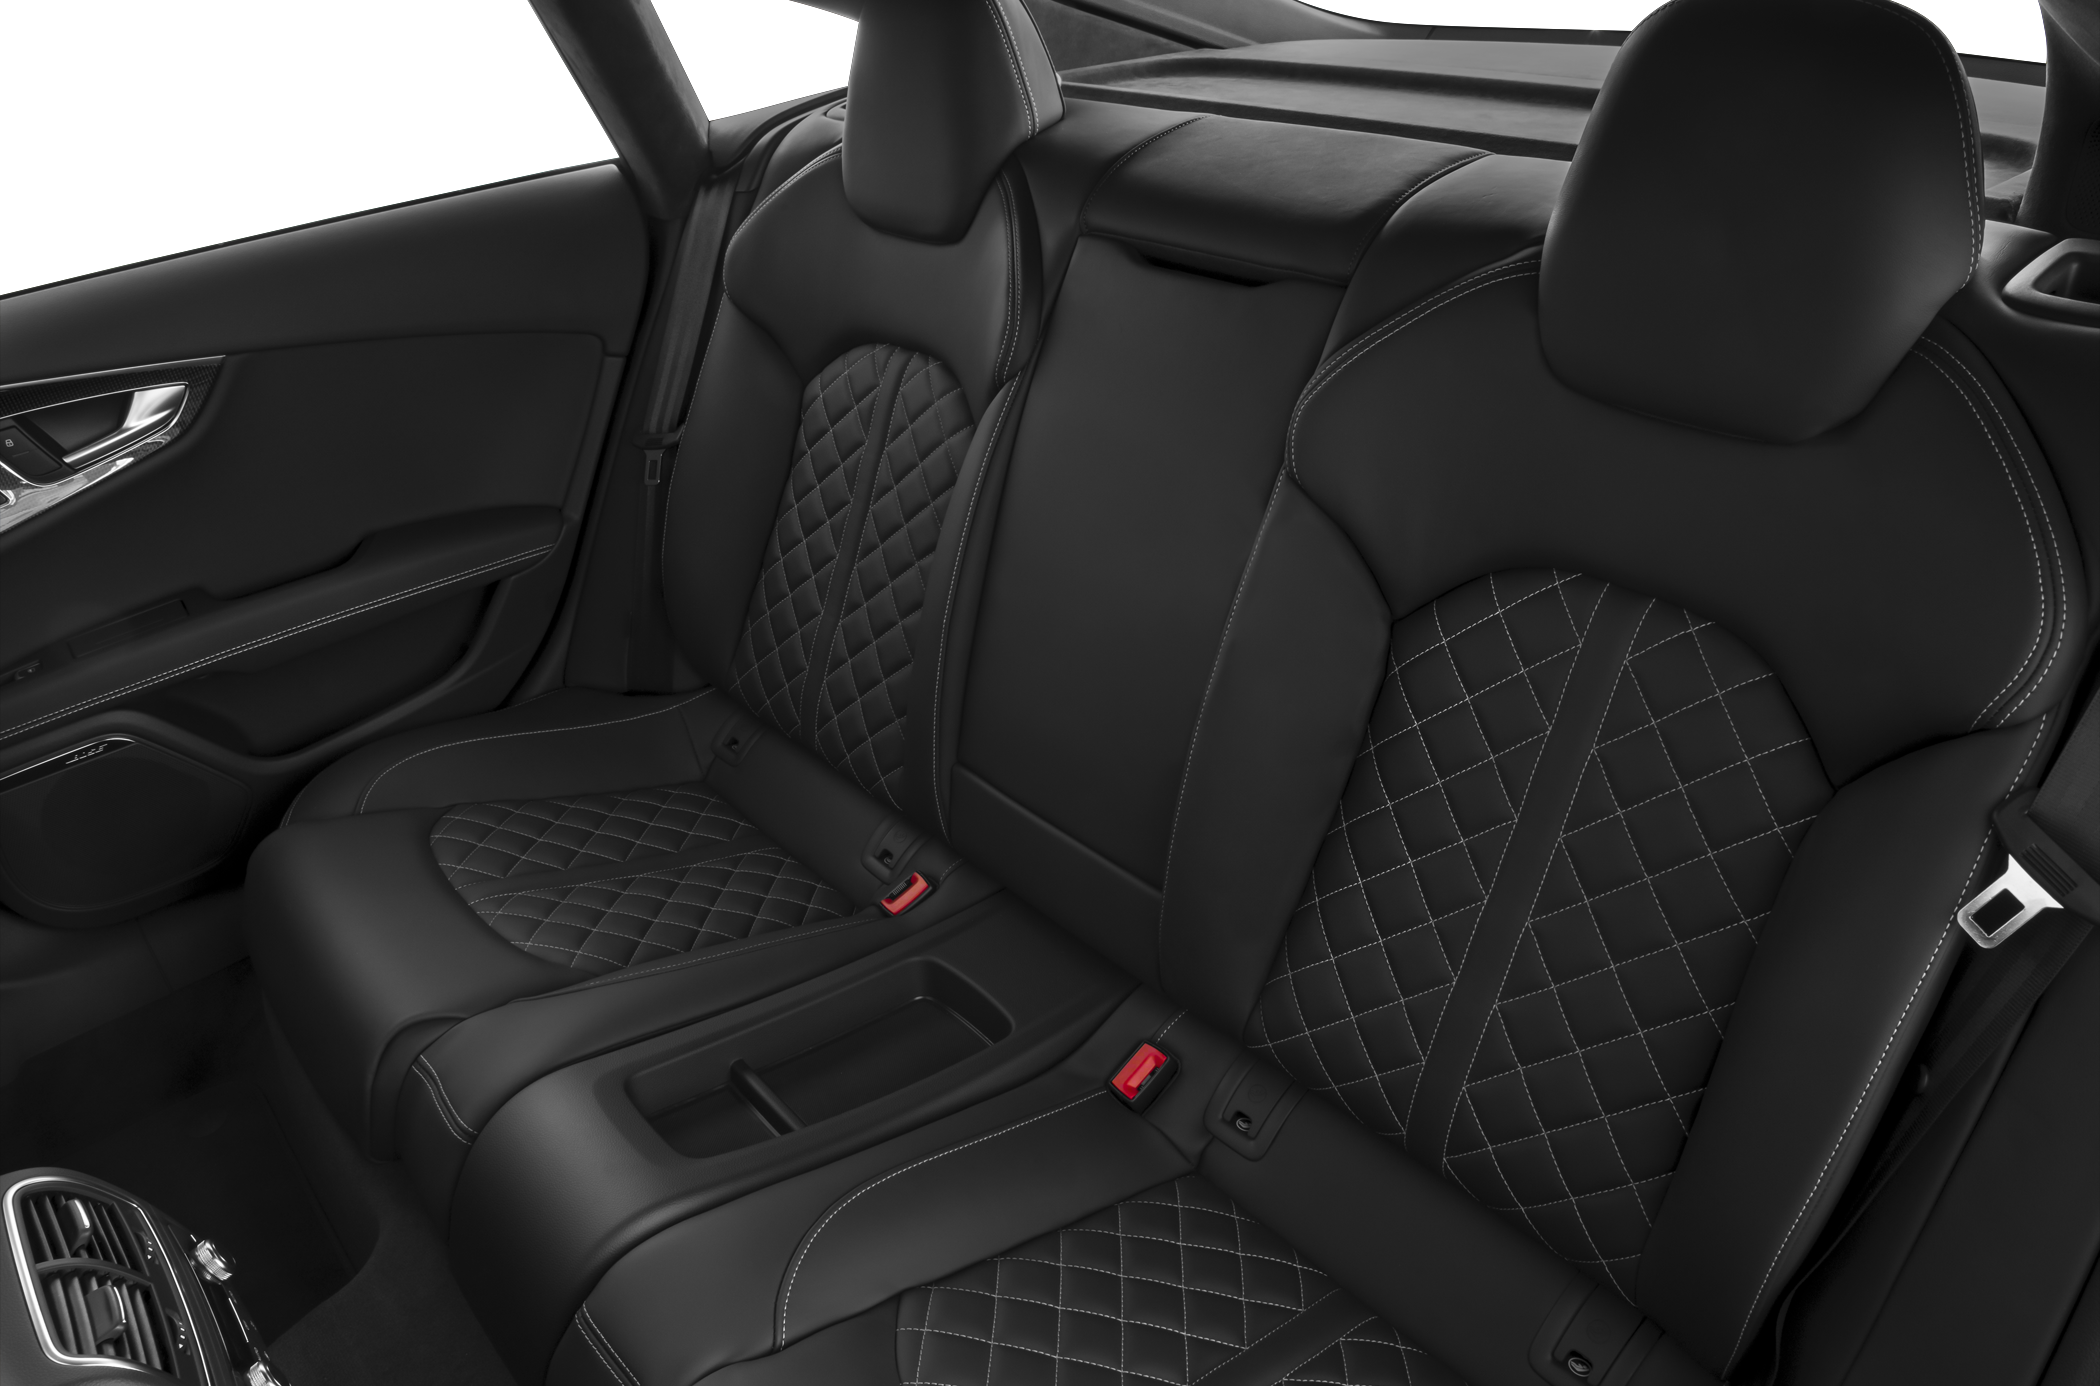 2015 Audi S7